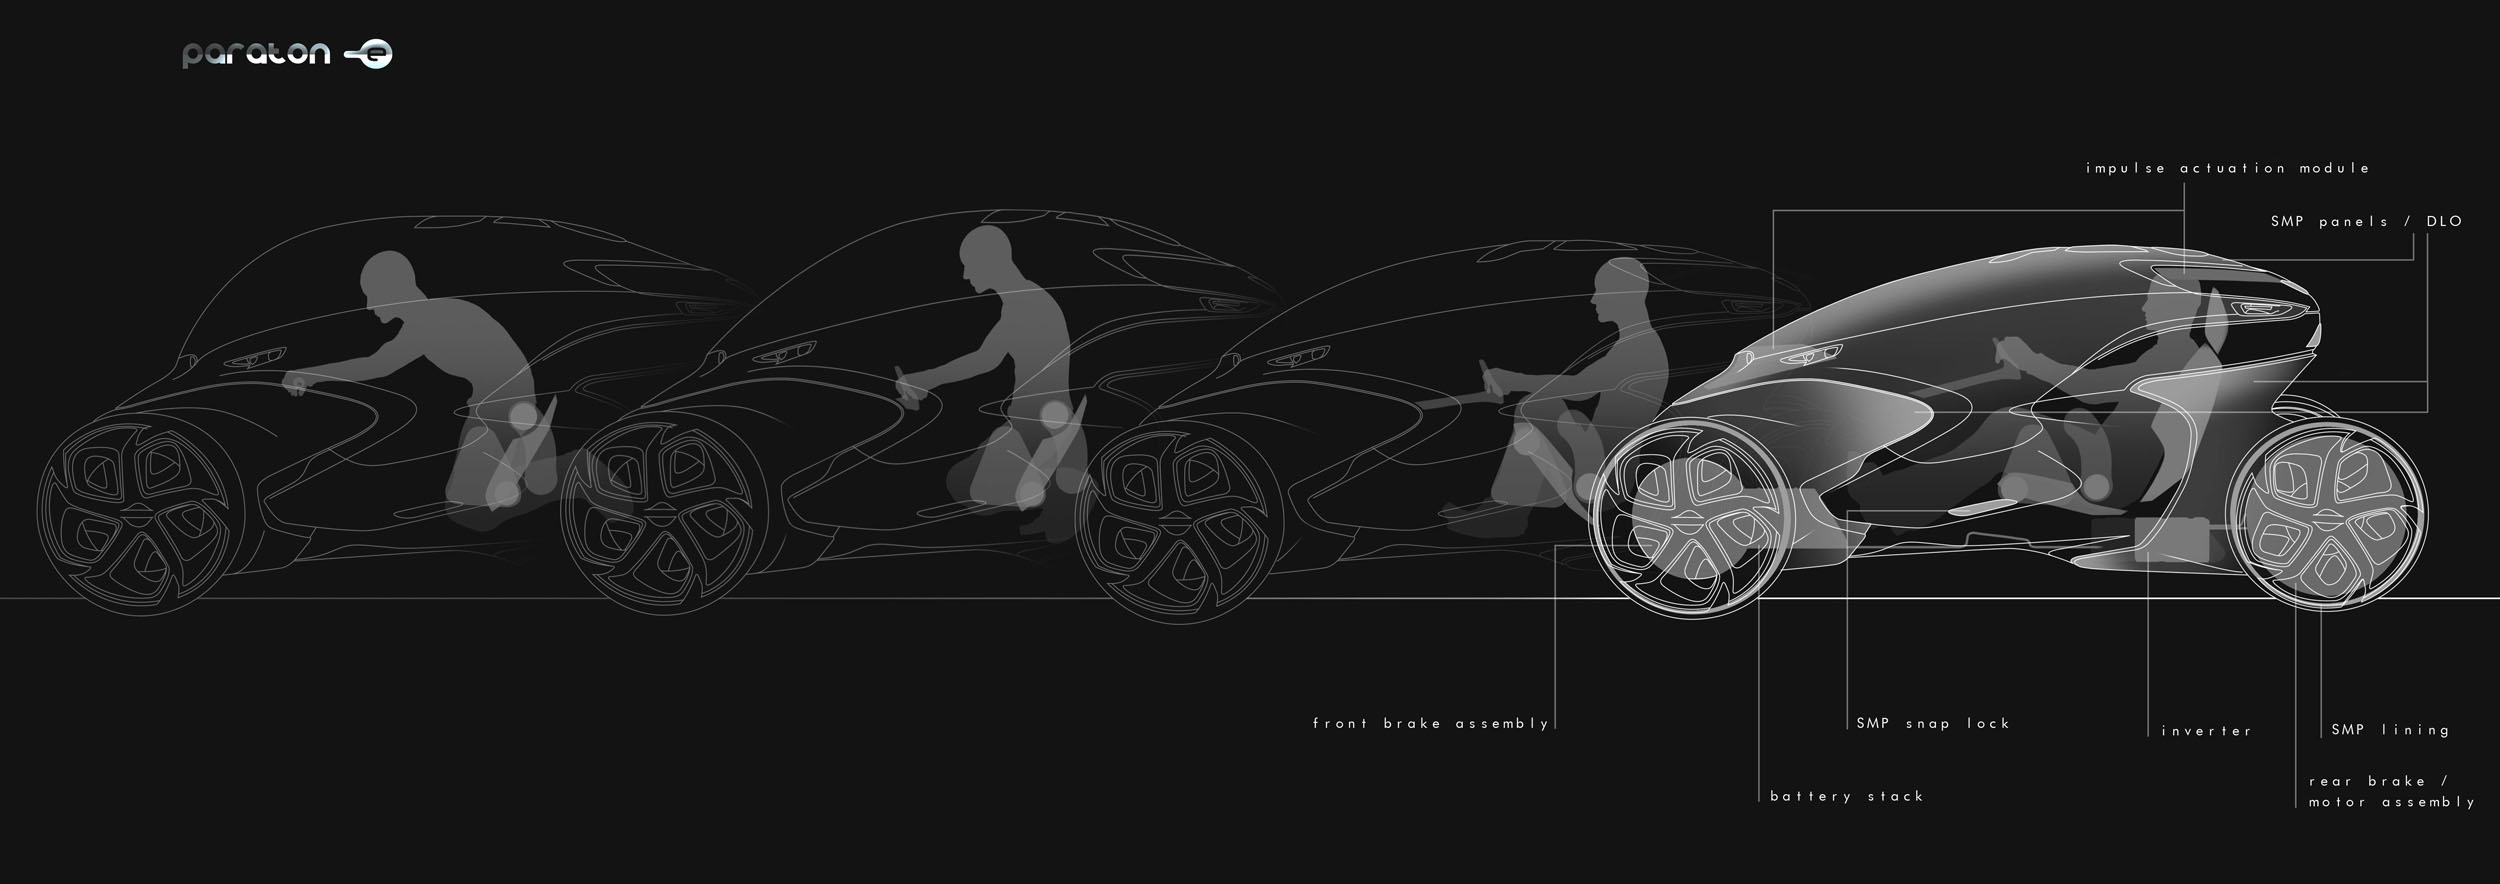 Paraton-е: футуристический автомобиль стирает грань между автомобилем и мотоциклом